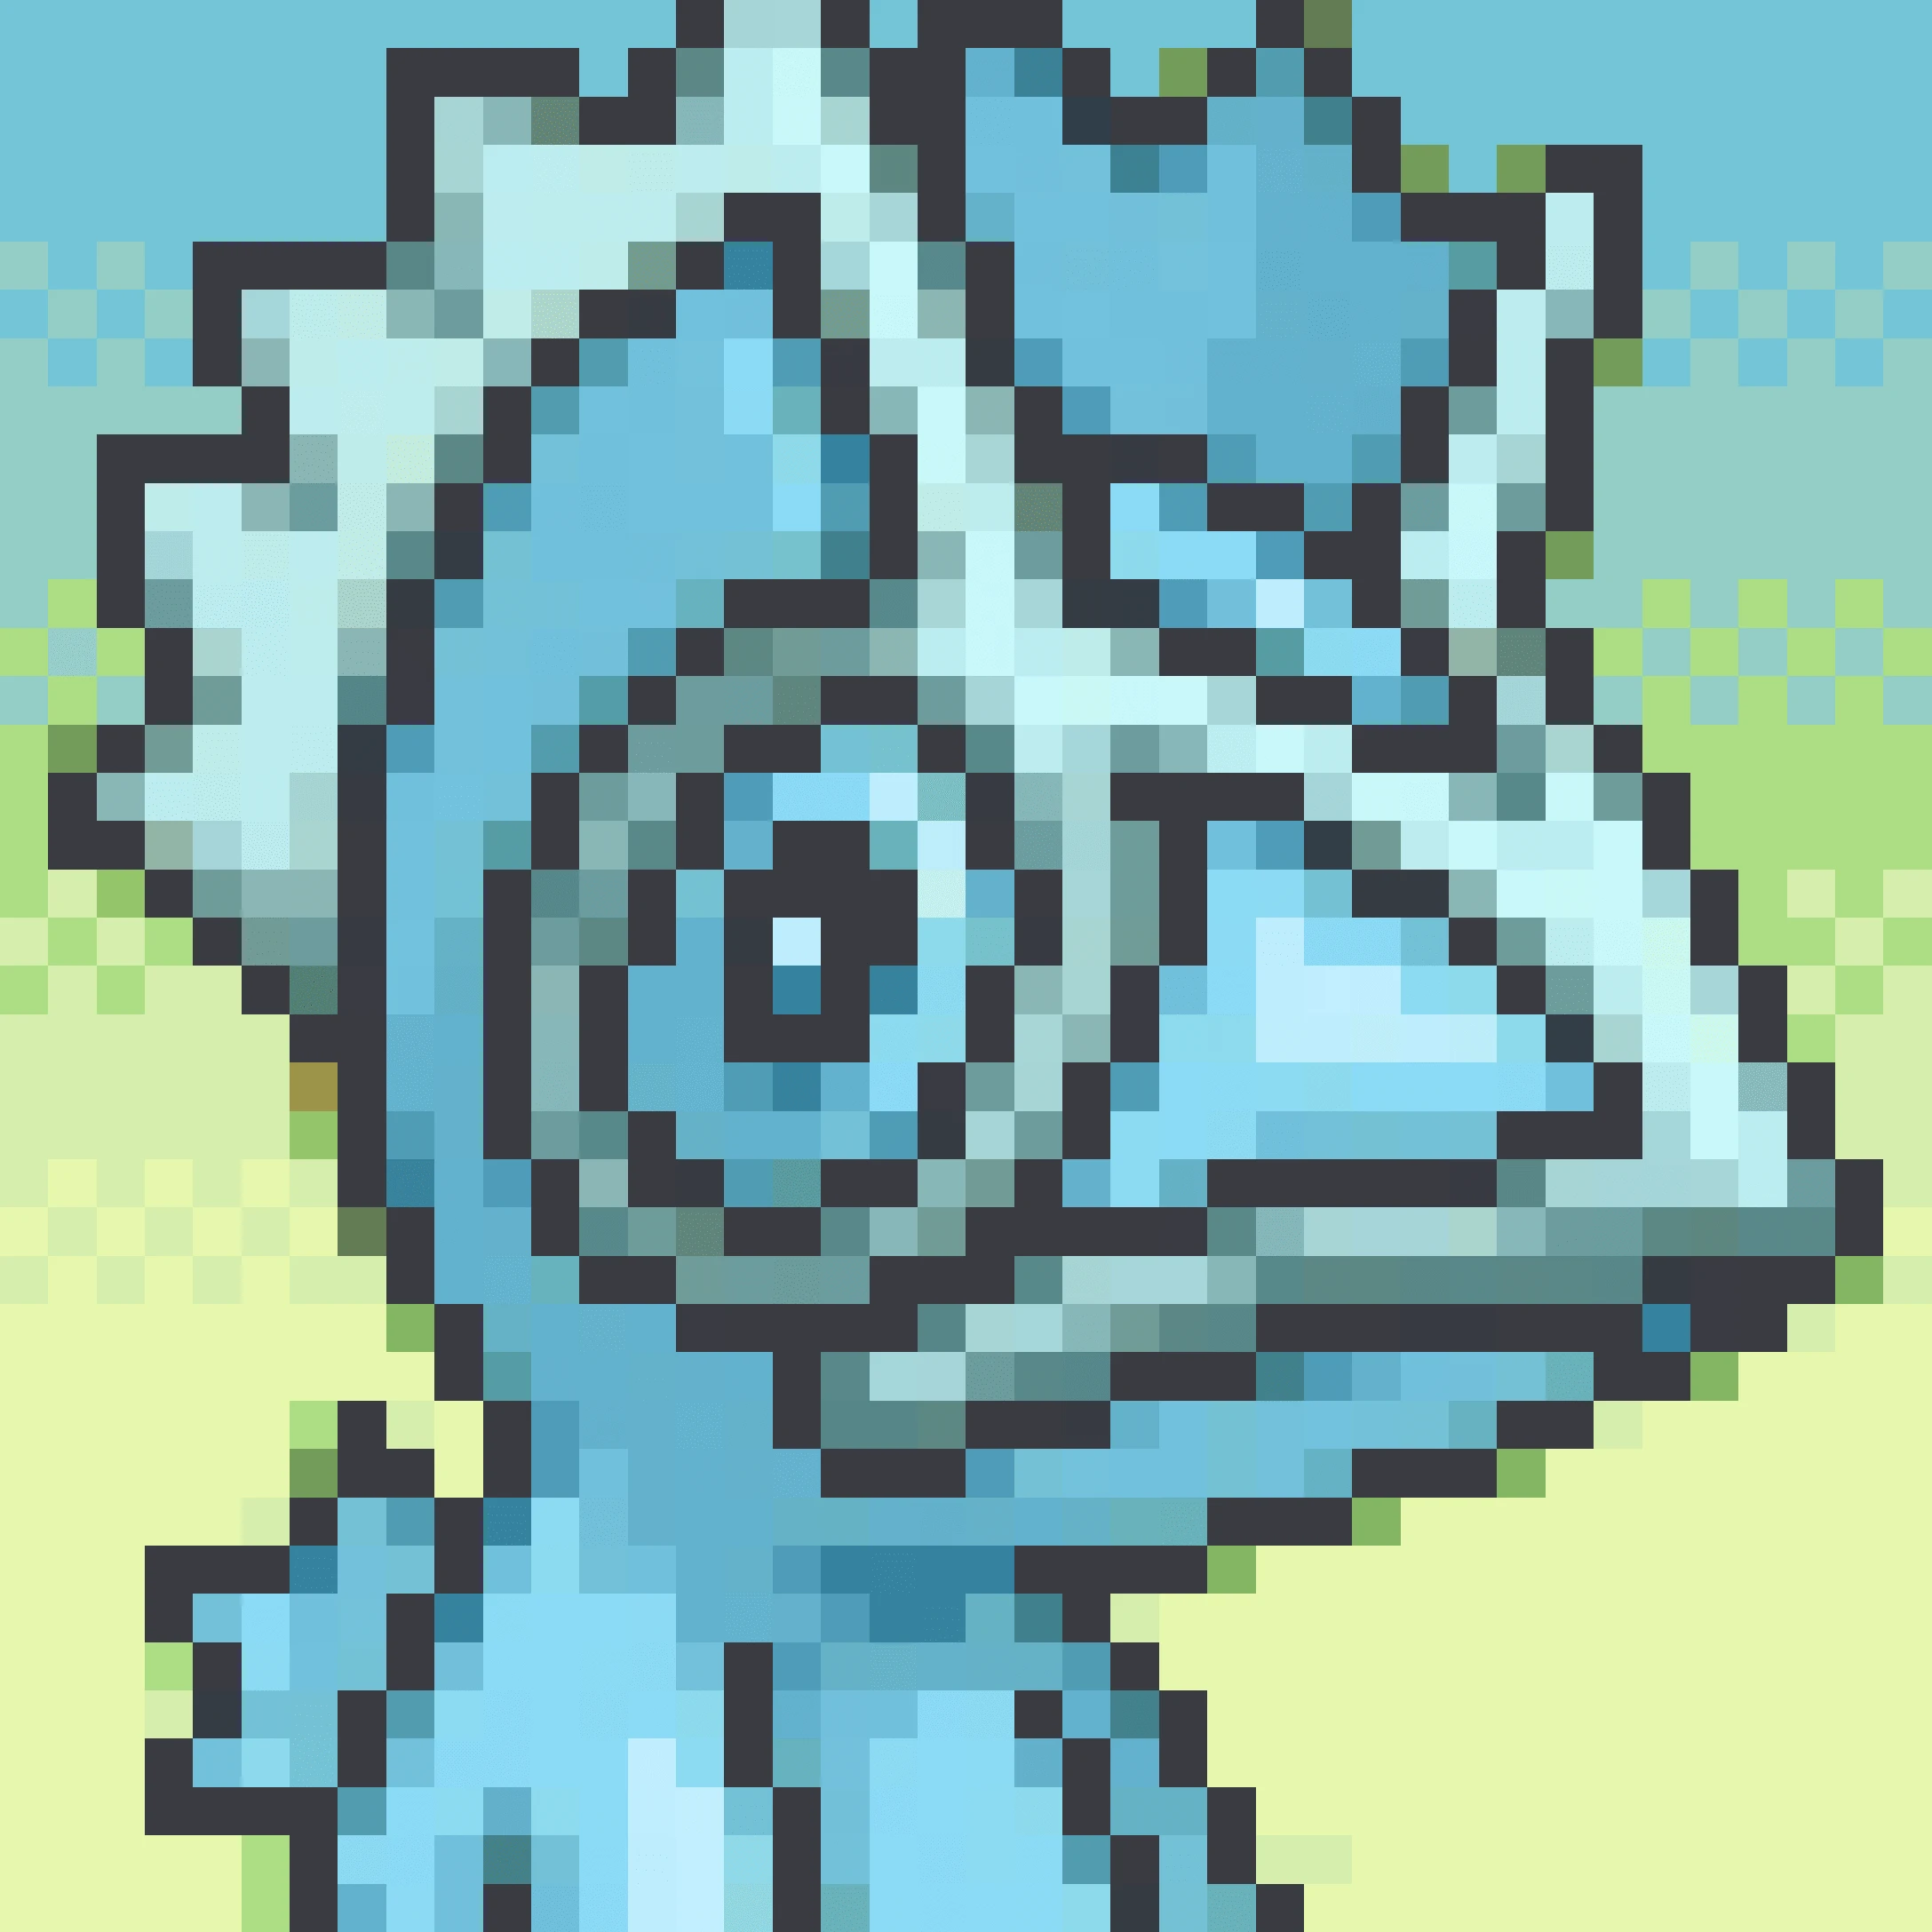 Frozeno ❄️'s avatar